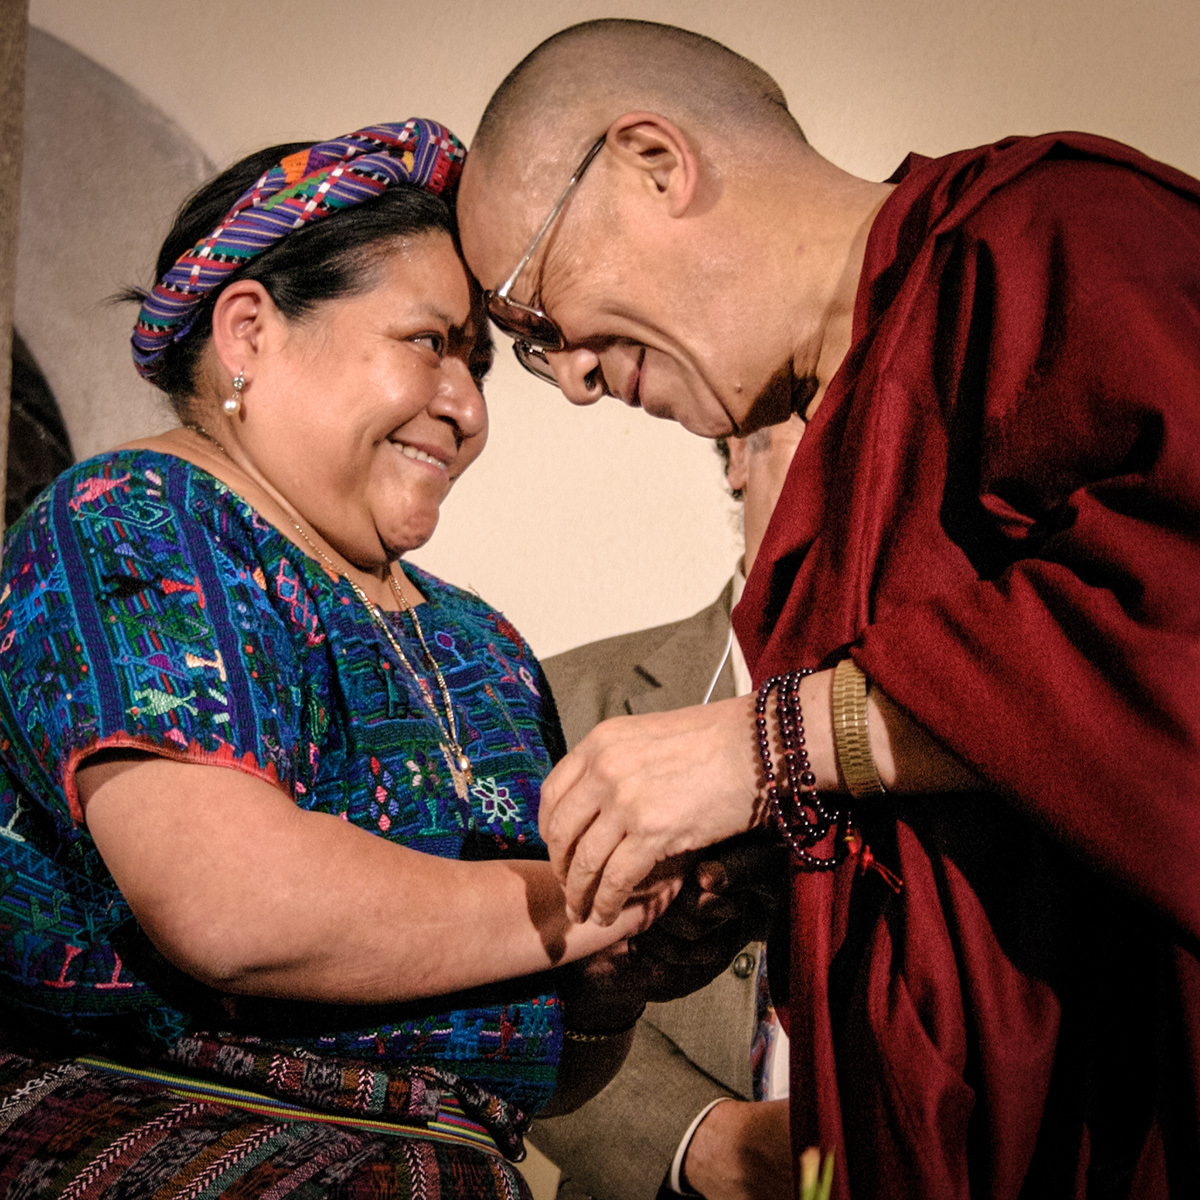 dalai Dalai Lama Rigoberta Rigoberta Menchu Menchu LAMA Guatemala premio nobel paz Nobel Prize peace tibet Daniel Urrutia danielurrutia.wix.com/camera-photo